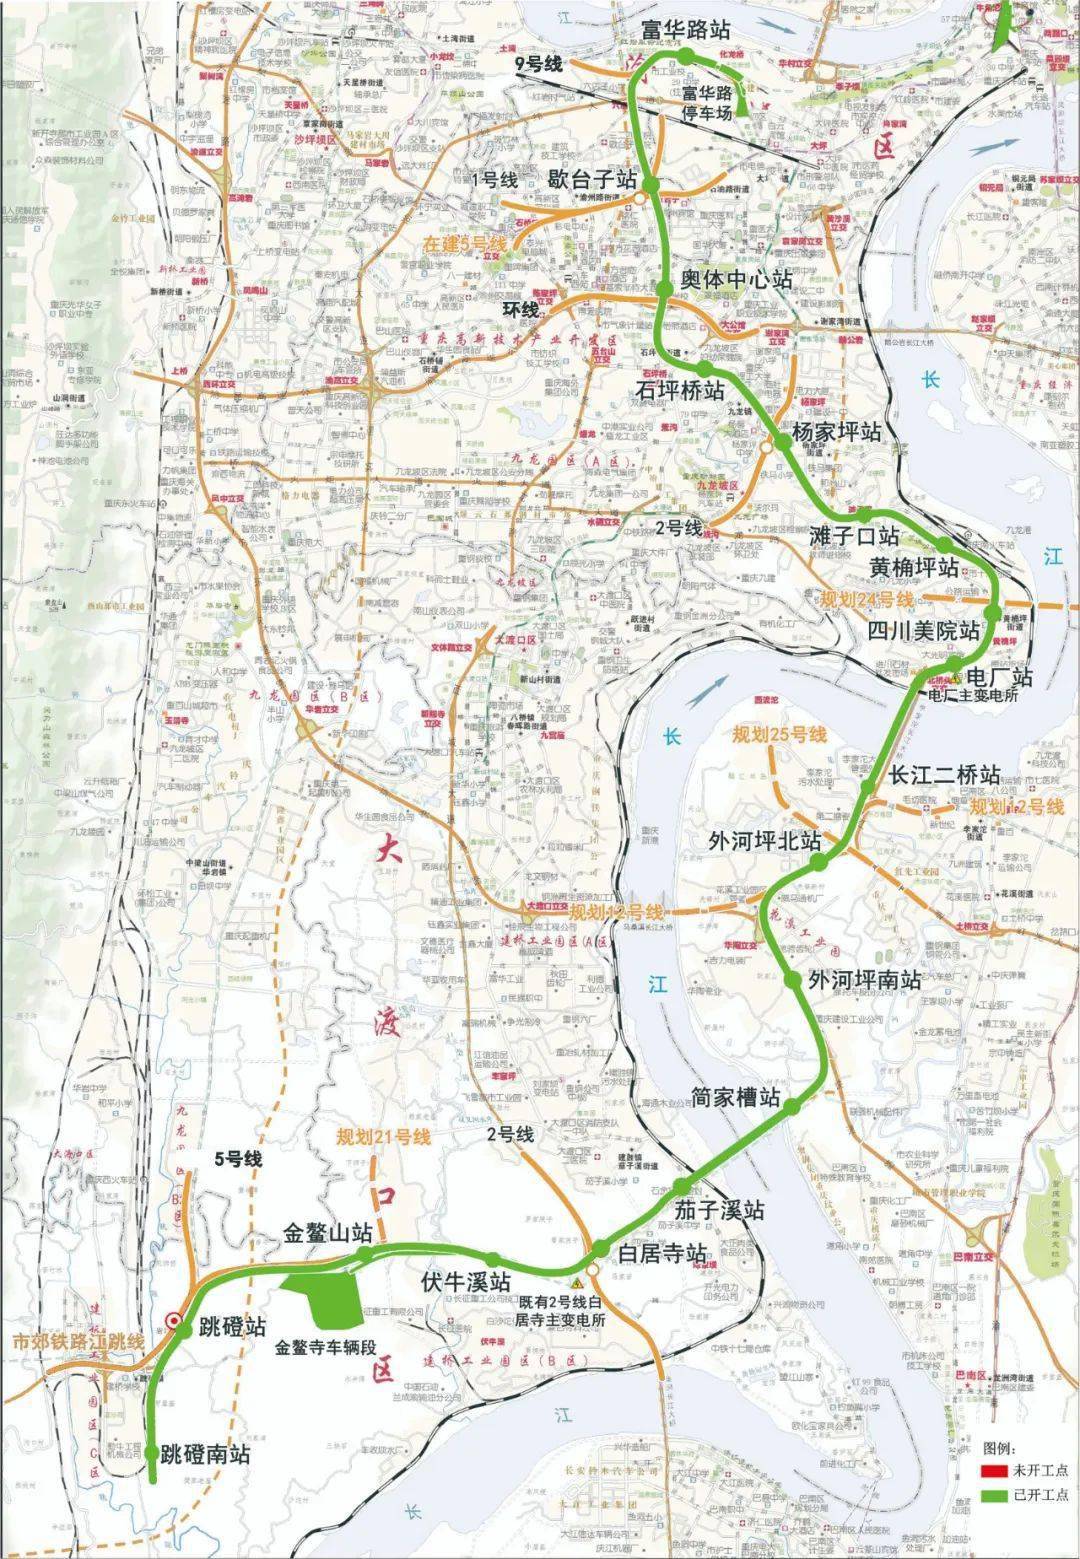 重庆18线轻轨线路图图片